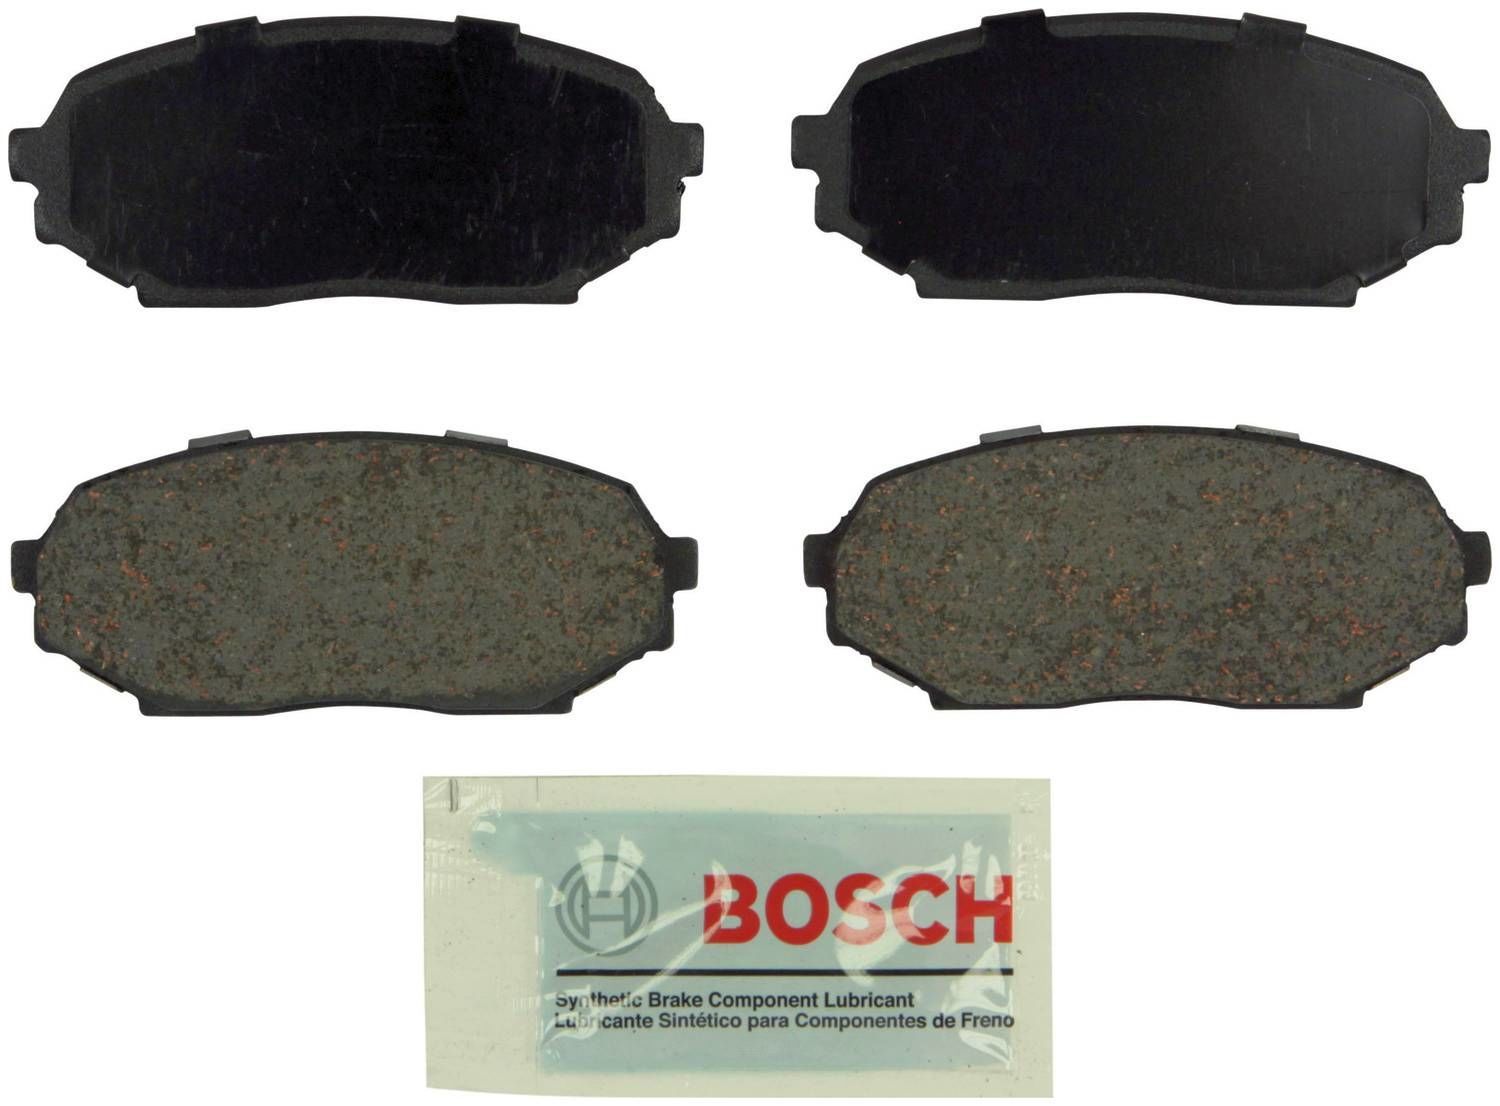 BOSCH BRAKE - Bosch Blue Ceramic Brake Pads (Front) - BQC BE468